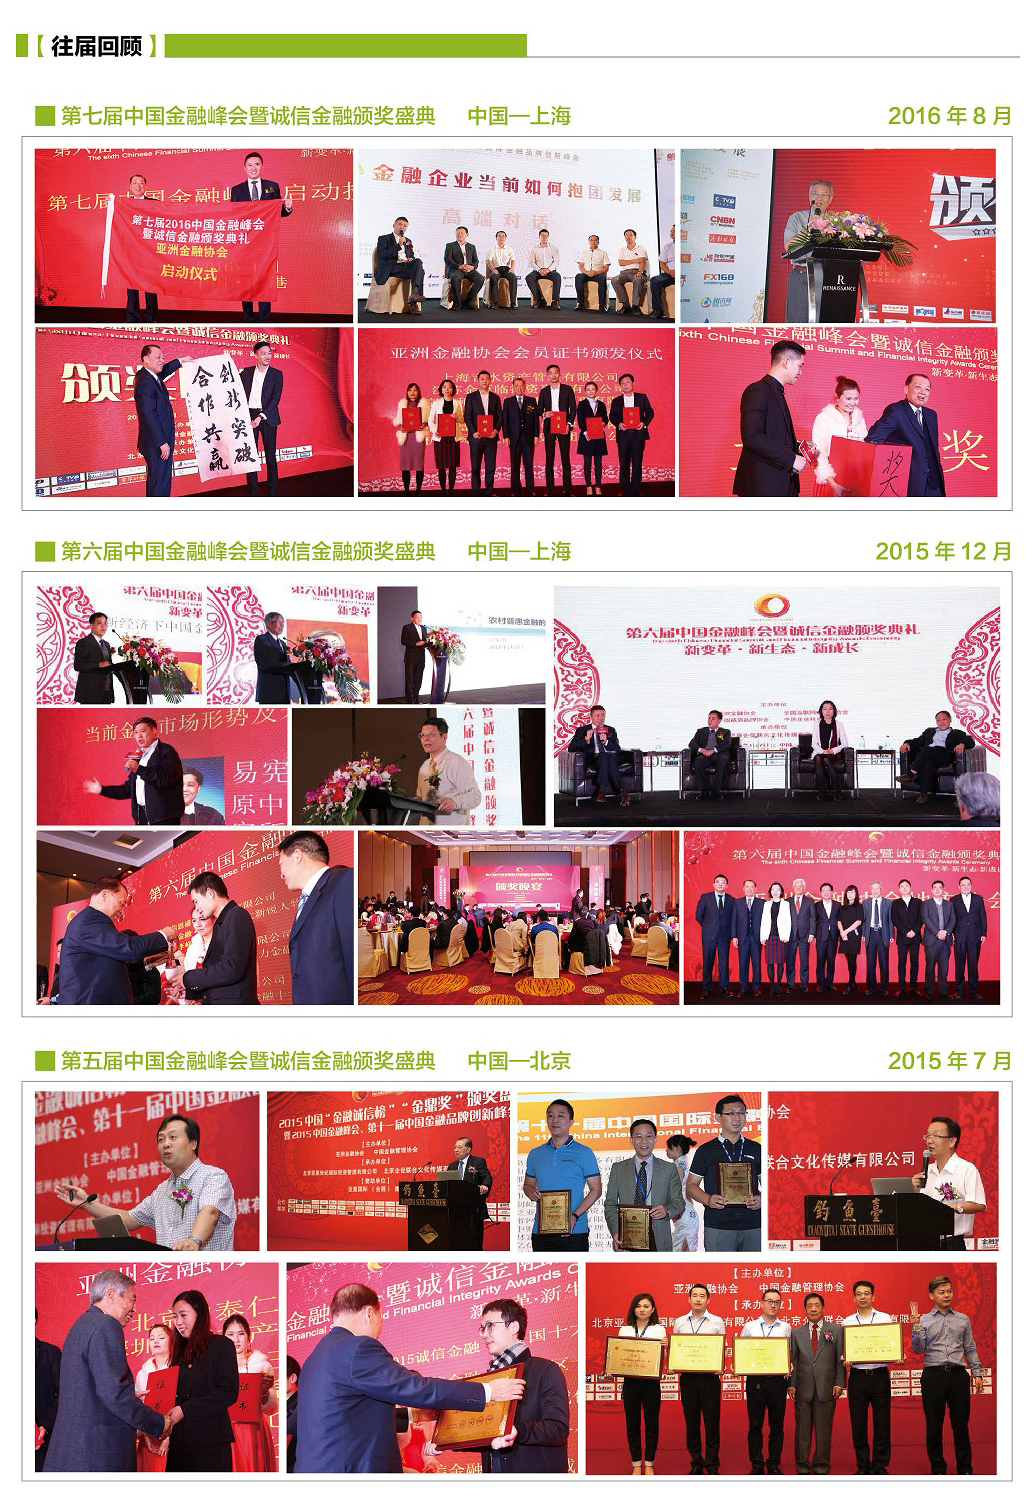 第八届中国金融峰会暨2017诚信金融颁奖盛典